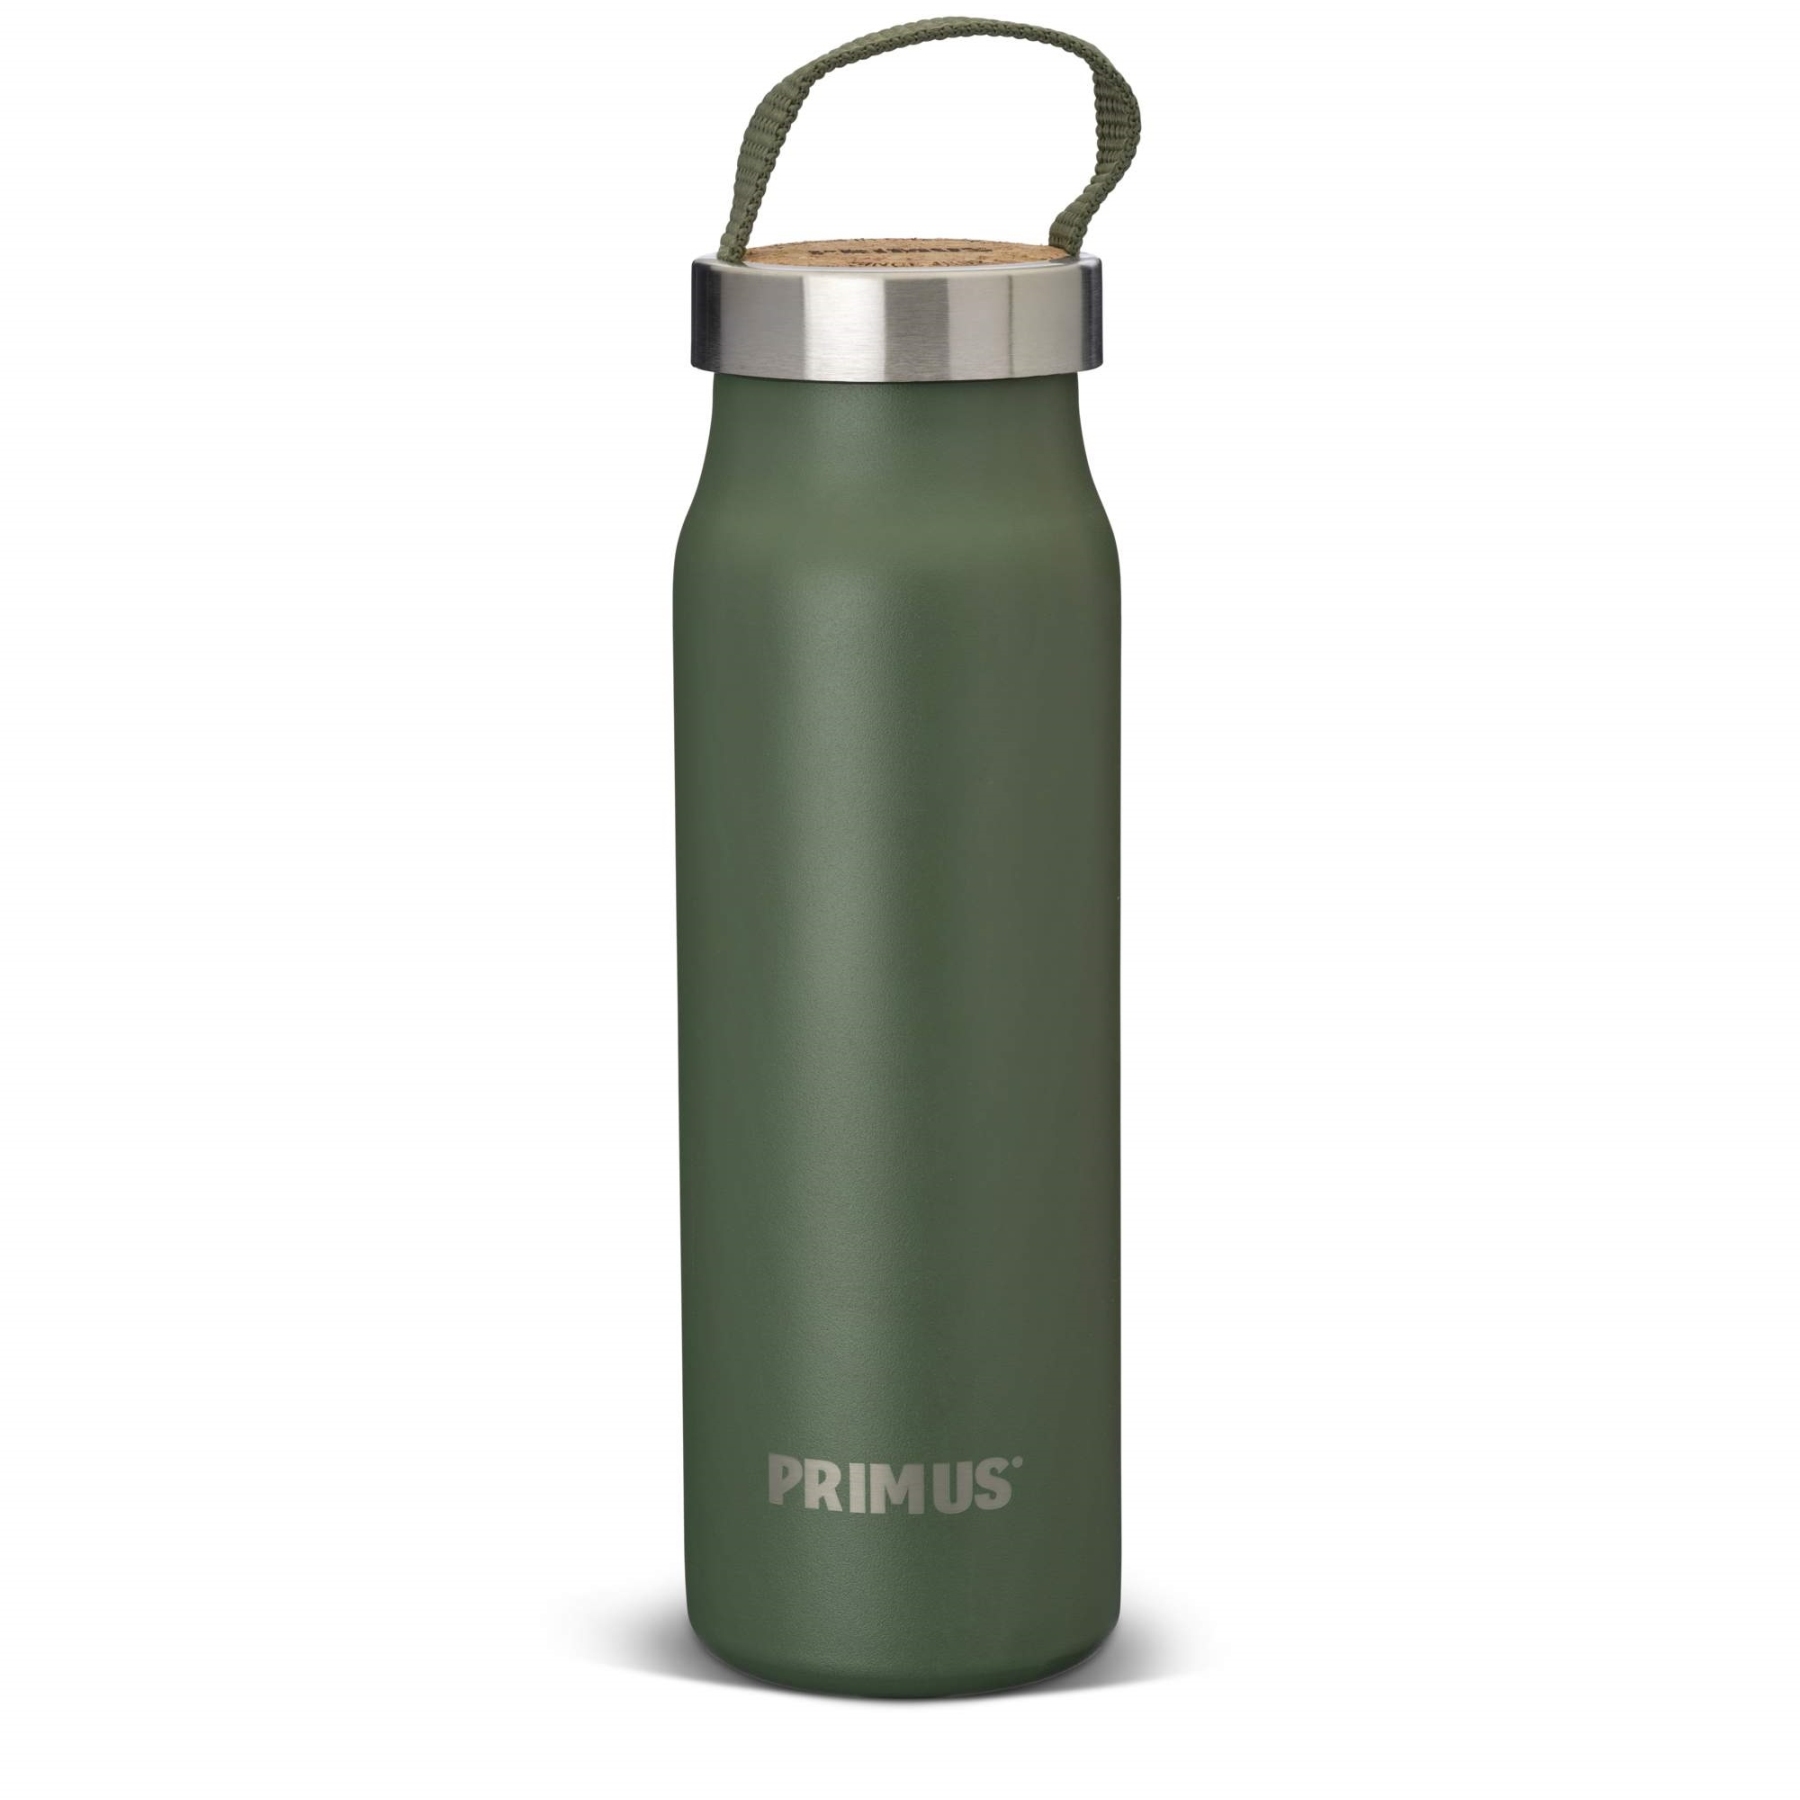 Productfoto van Primus Klunken Vacuum Bottle 0.5 L - green